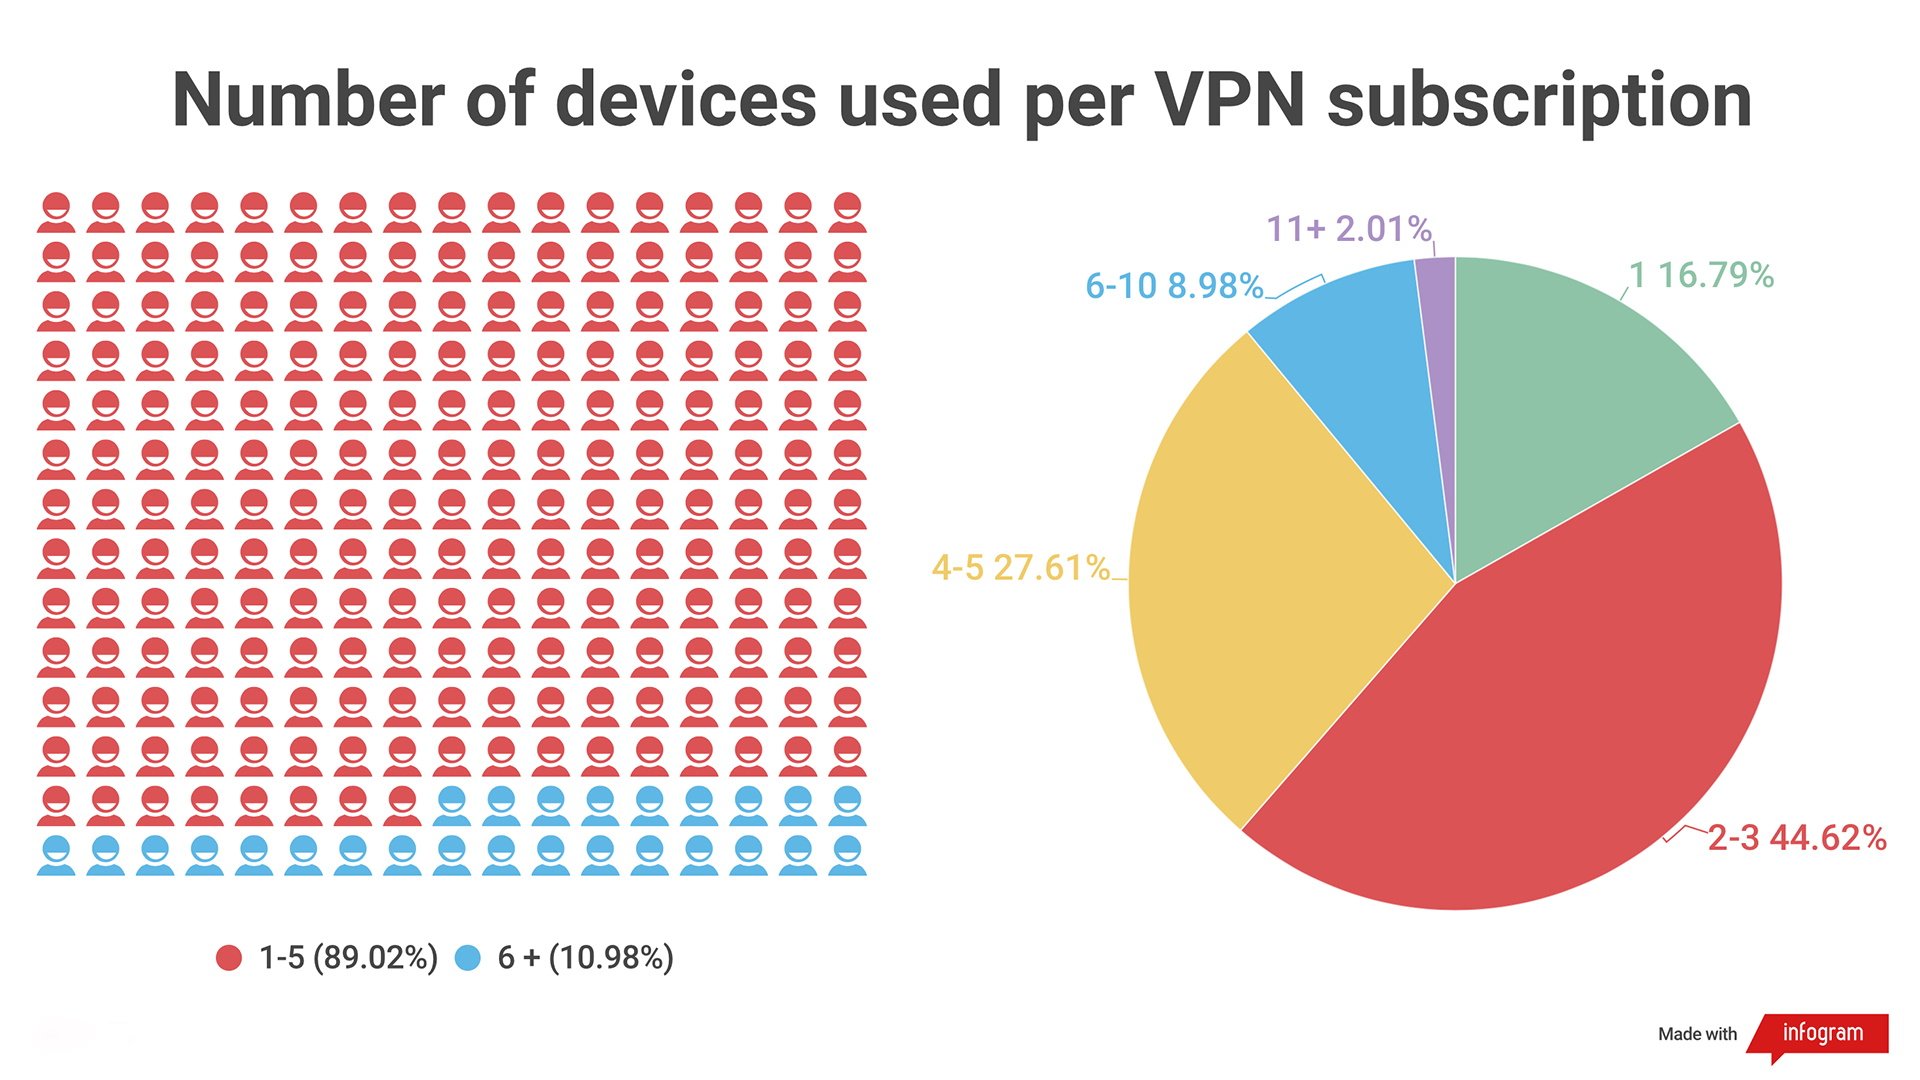 Deux infographies montrant le nombre d'appareils utilisés par abonnement VPN